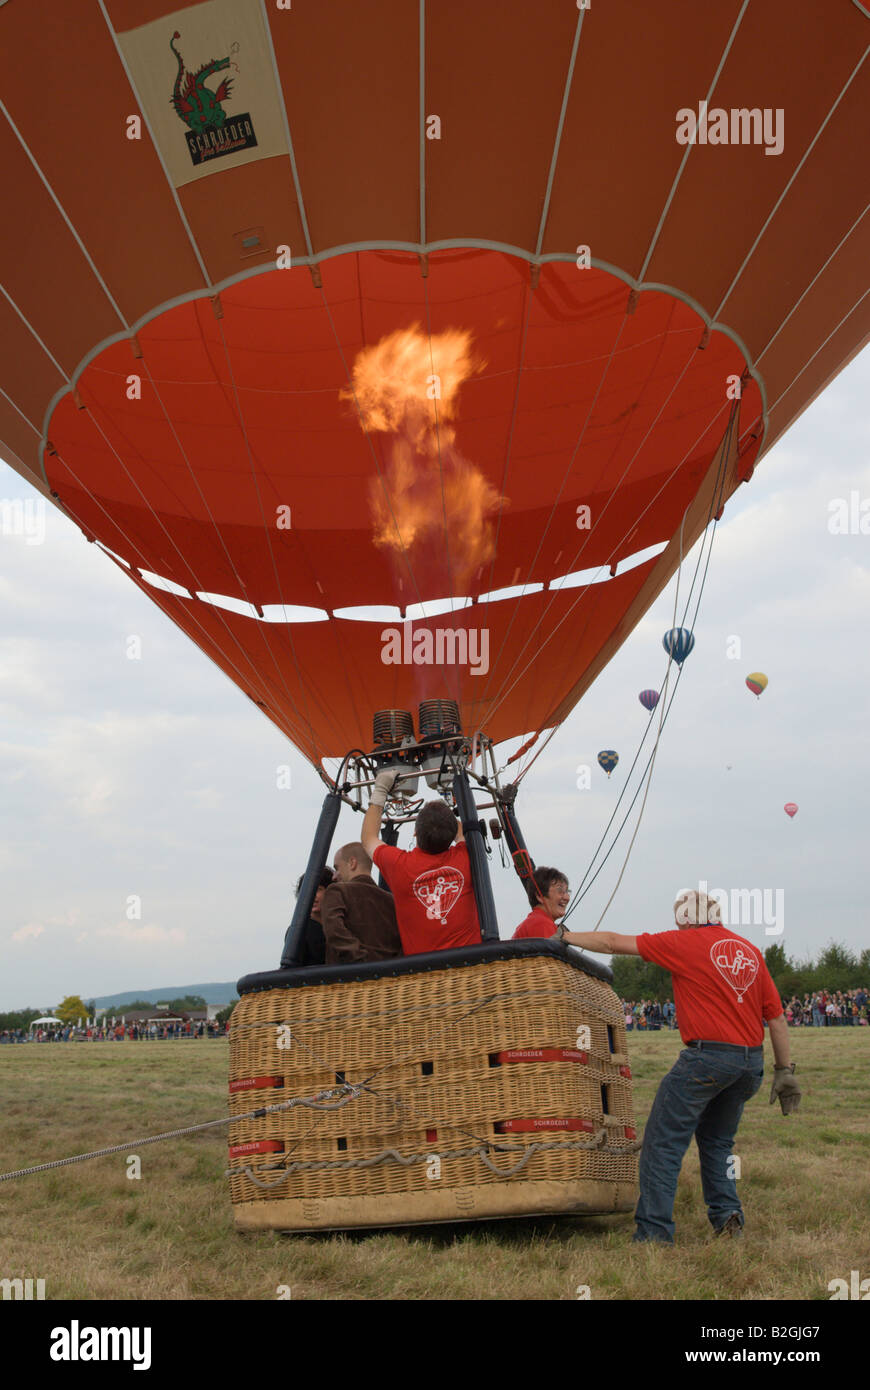 Volo in mongolfiera ad aria calda ballons festival fiamma di un bruciatore di massa di avviamento Foto Stock